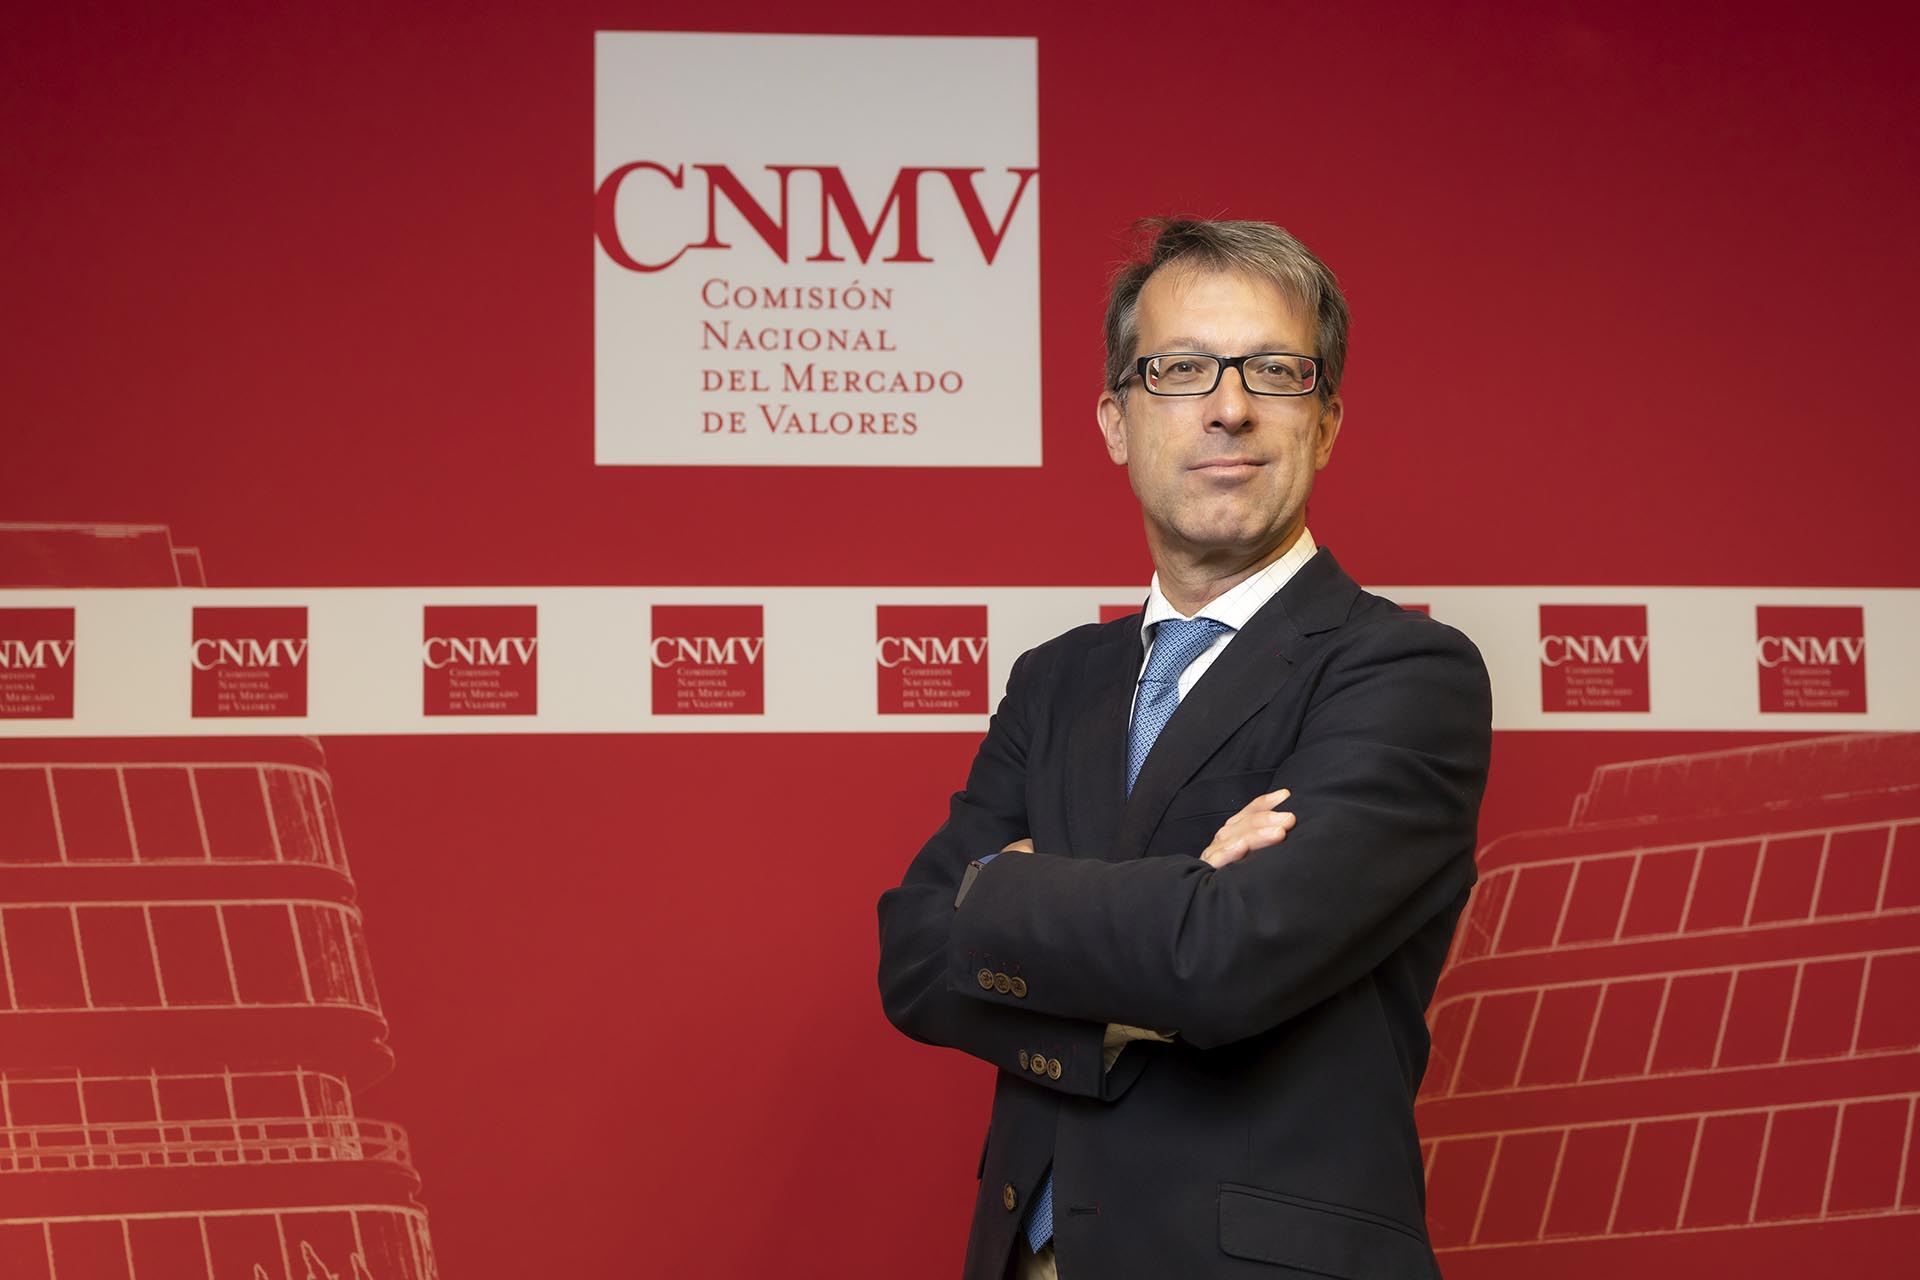  Imagen de Mariano Bacigalupo, consejero de la CNMV (se abrirá ventana nueva)